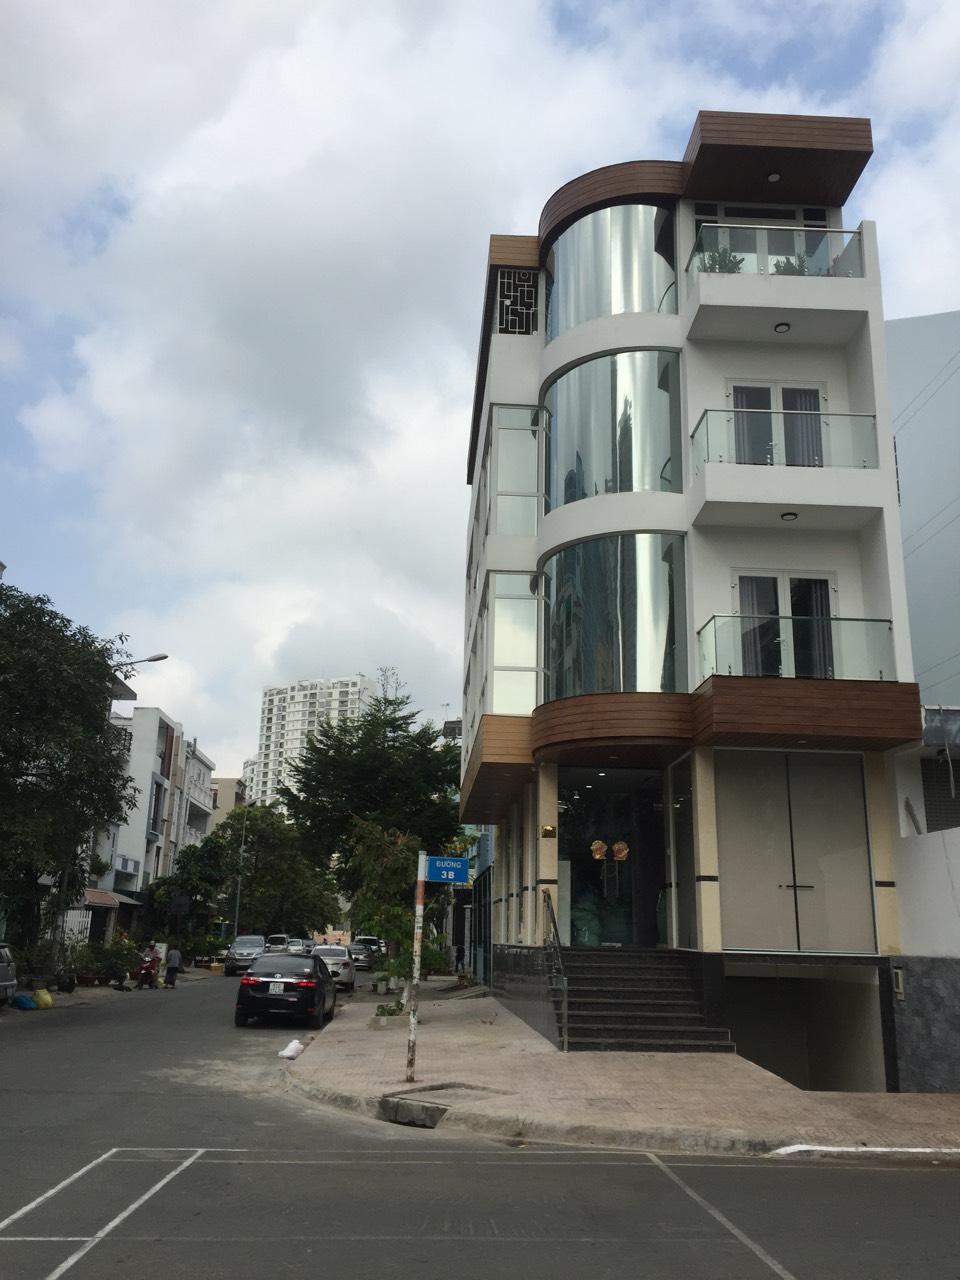 Cần bán nhà phố mới xây góc hai mặt tiền khu TDC HIMLAM KÊNH TẺ QUẬN 7 090.13.23.176 THÙY 10151667